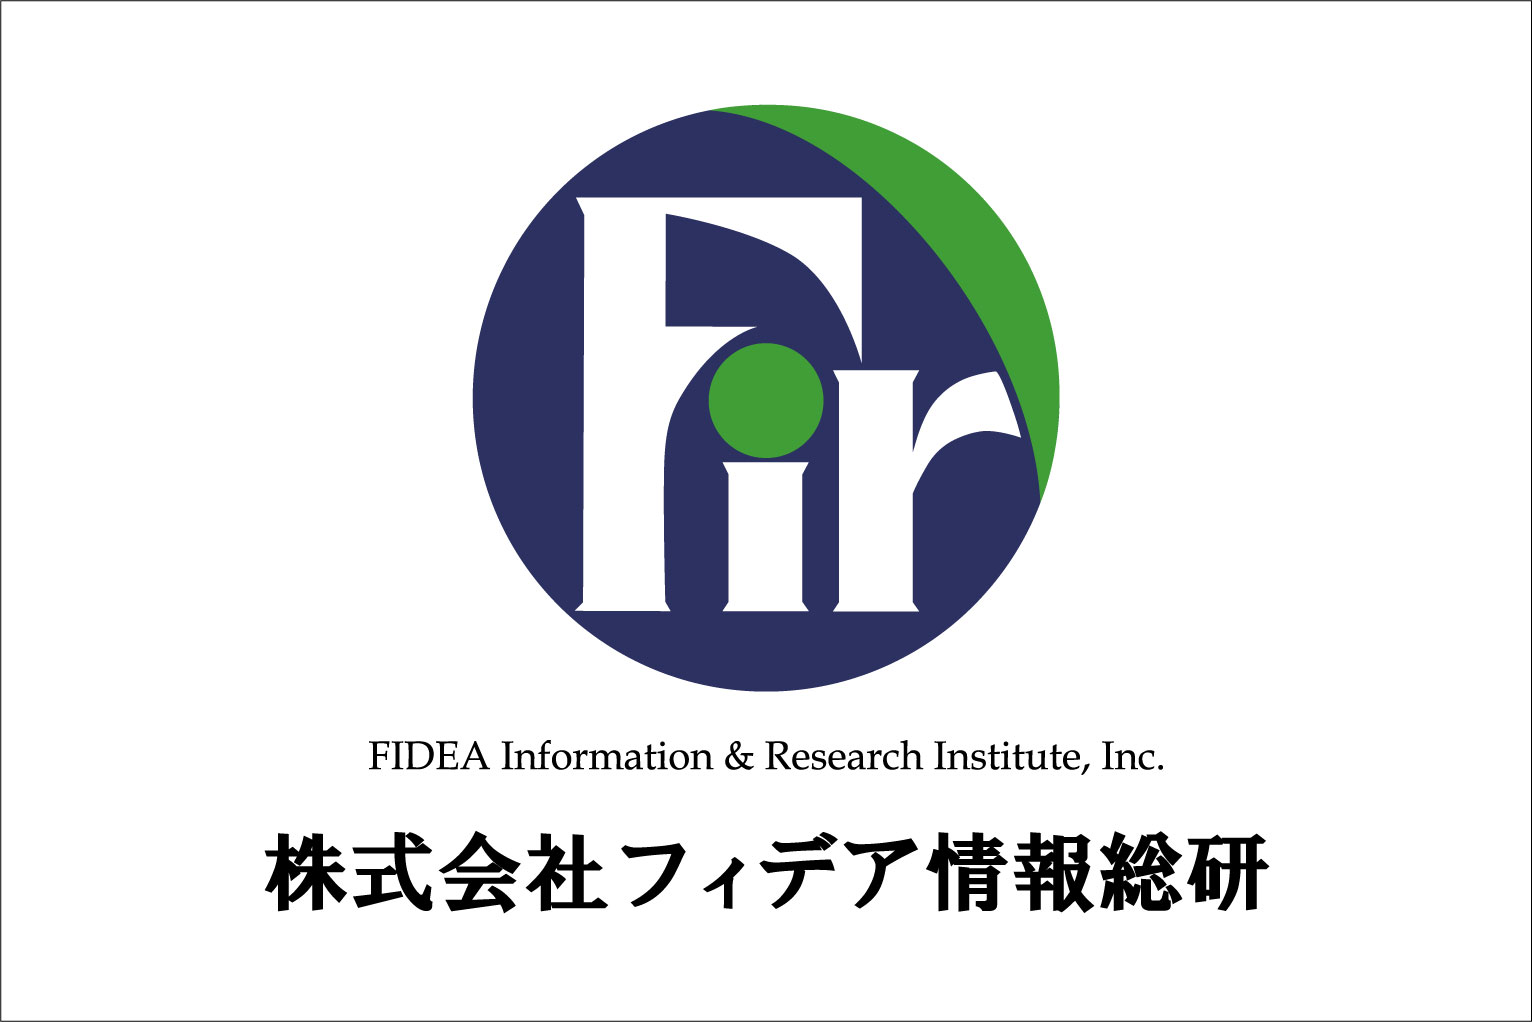 ロゴ:株式会社フィデア情報総研